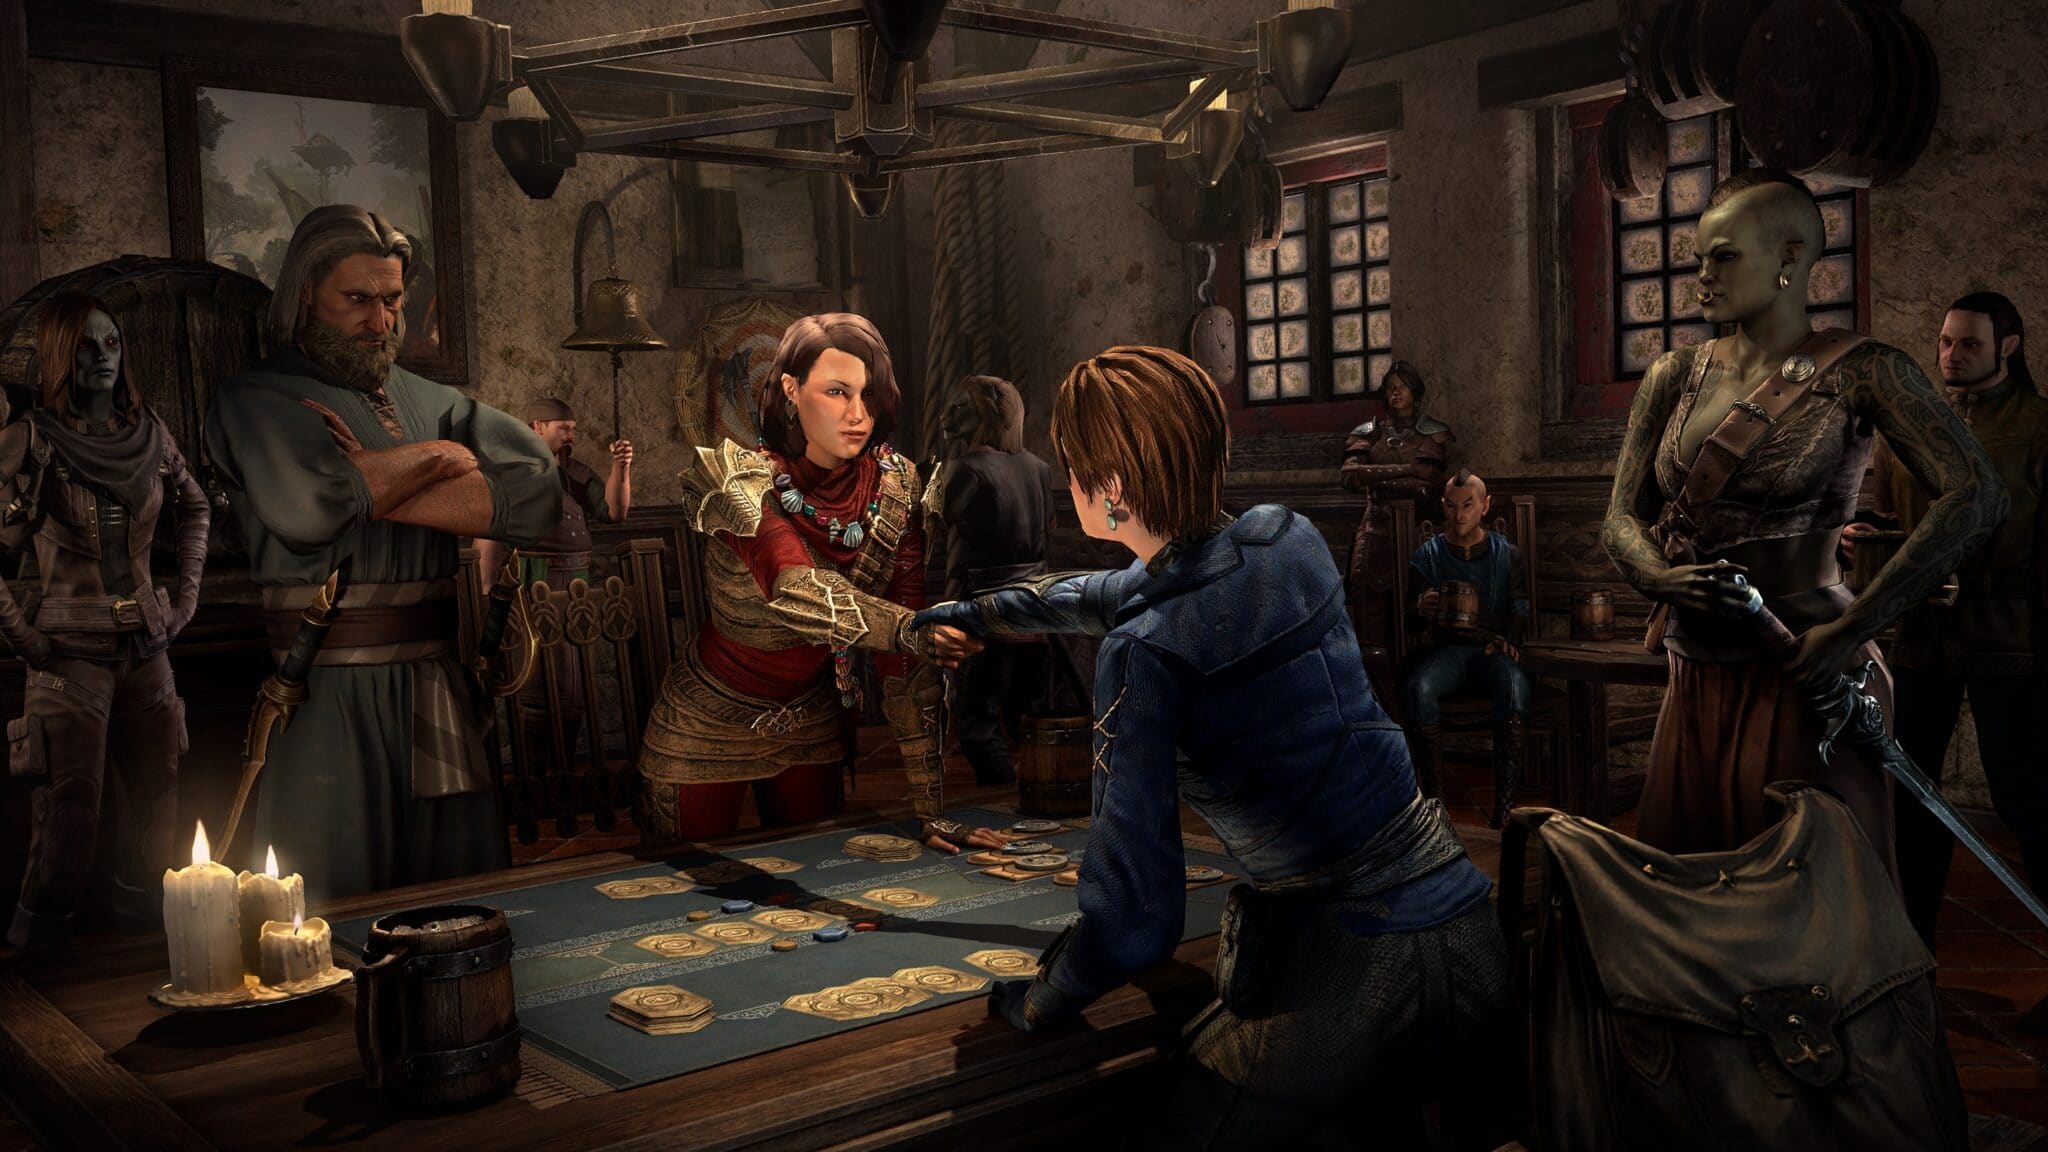 Les habitants de Tamriel aiment s'amuser en jouant aux cartes de gloire dans la taverne.